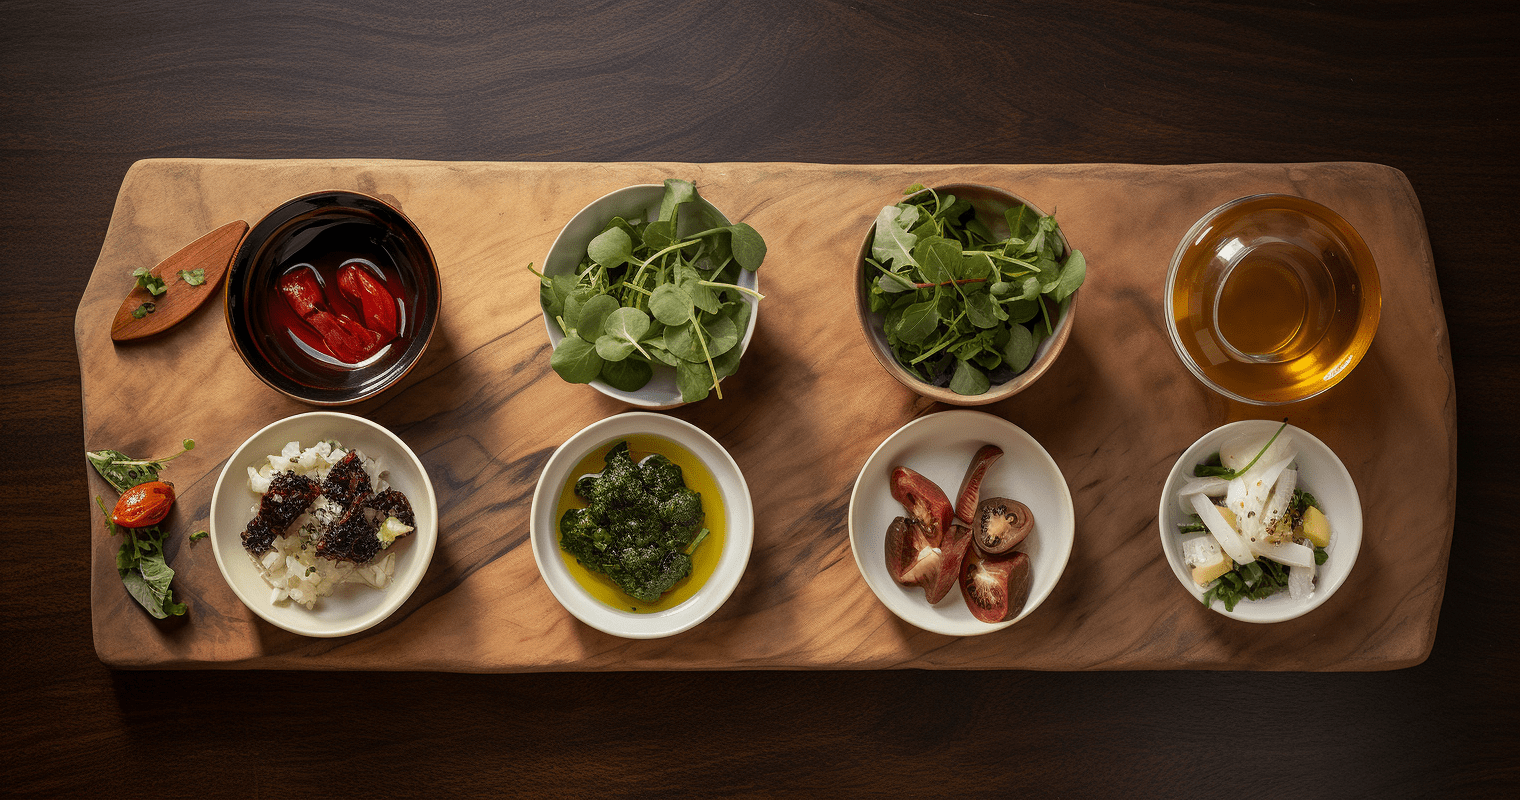 Three Sisters Salad Ingredients